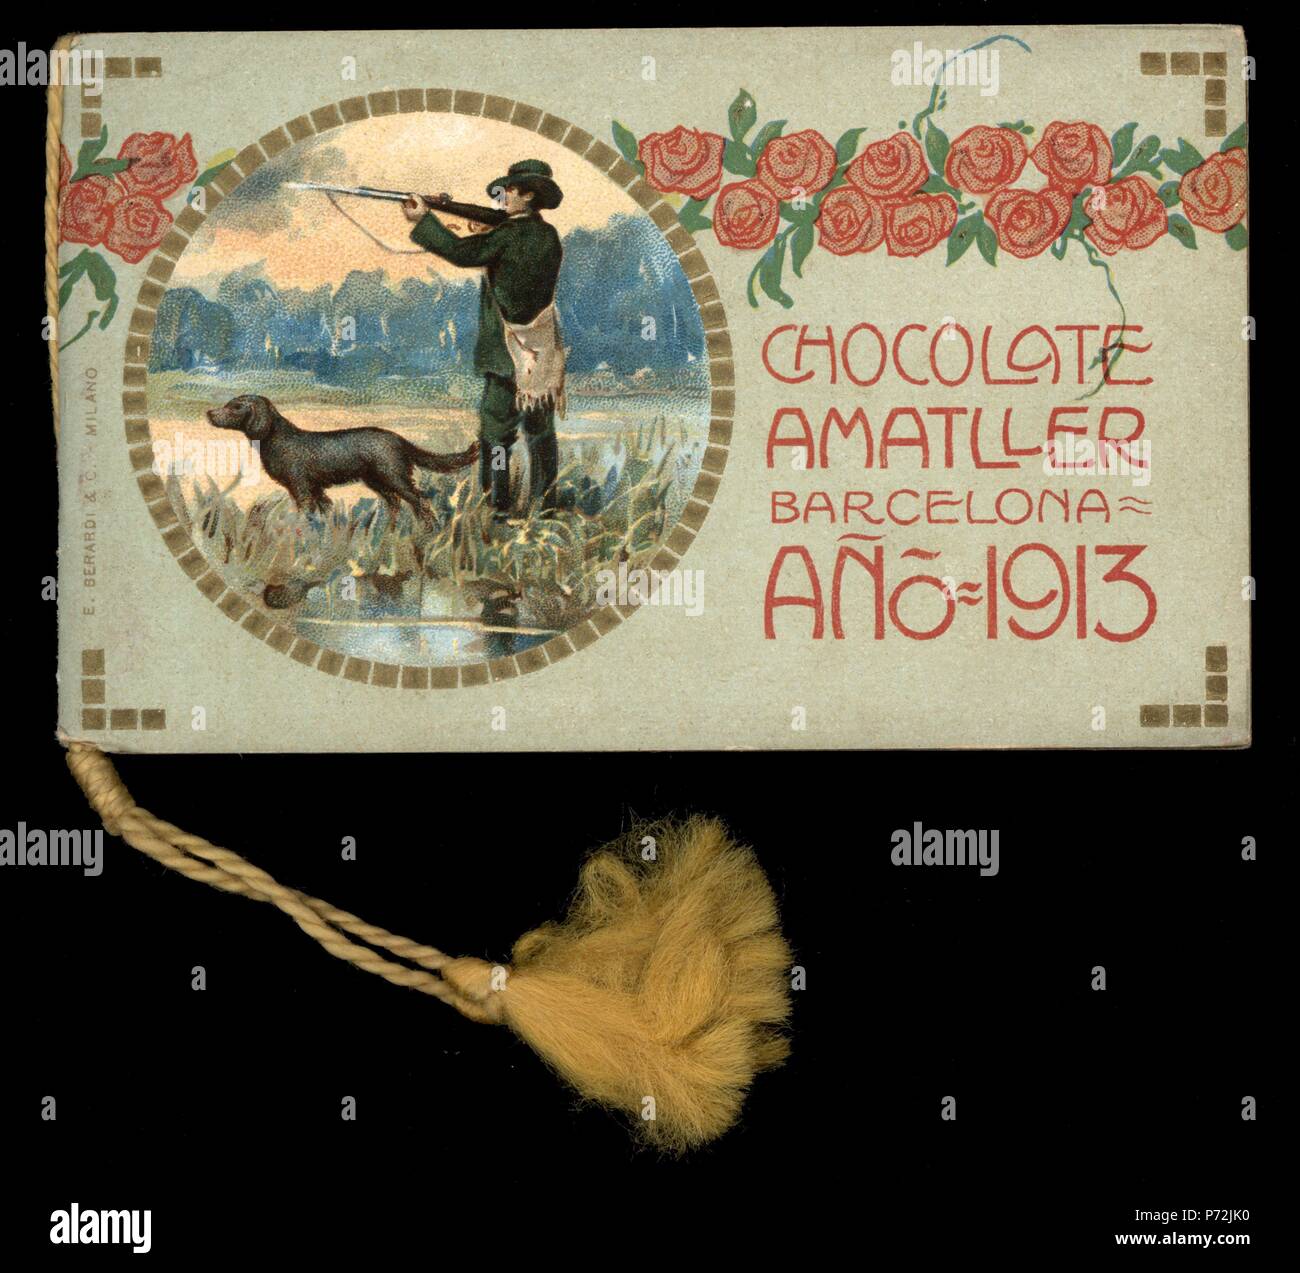 Calendario de bolsillo, moderniste regalo de Chocolates Amatller, año 1913. Banque D'Images